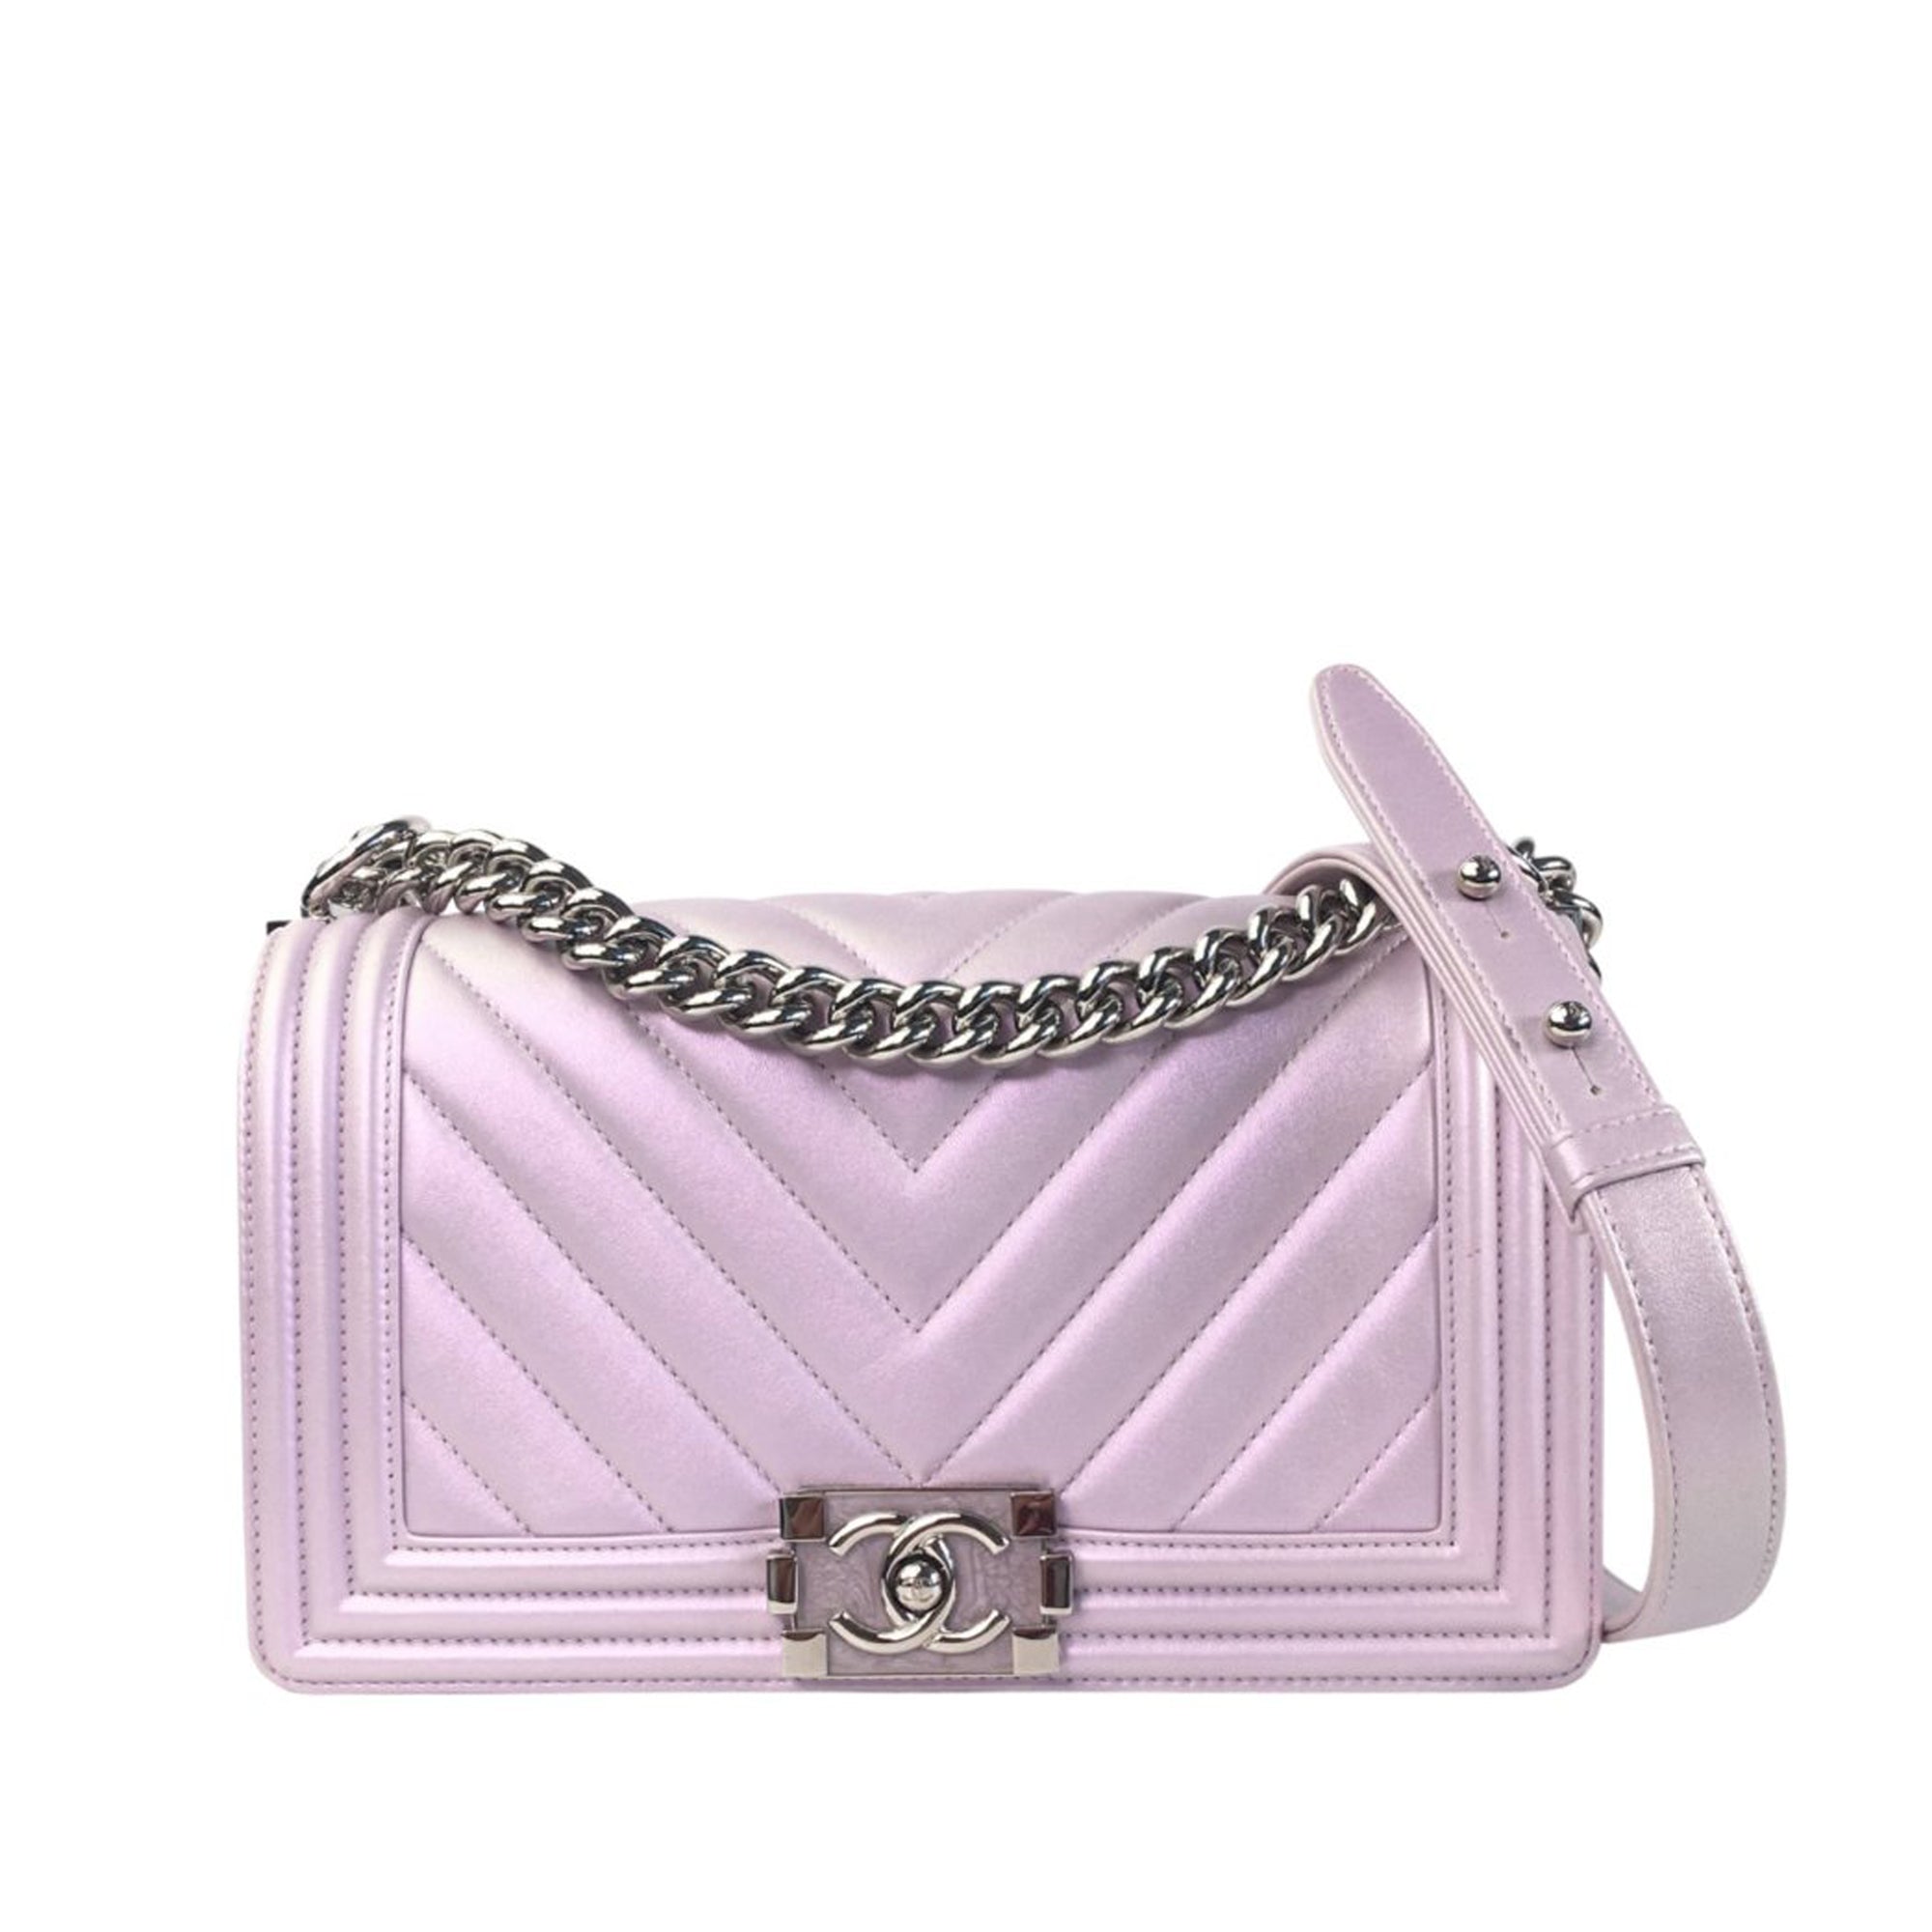 Chanel Flap Bag Light Purple - Lambskin Leather